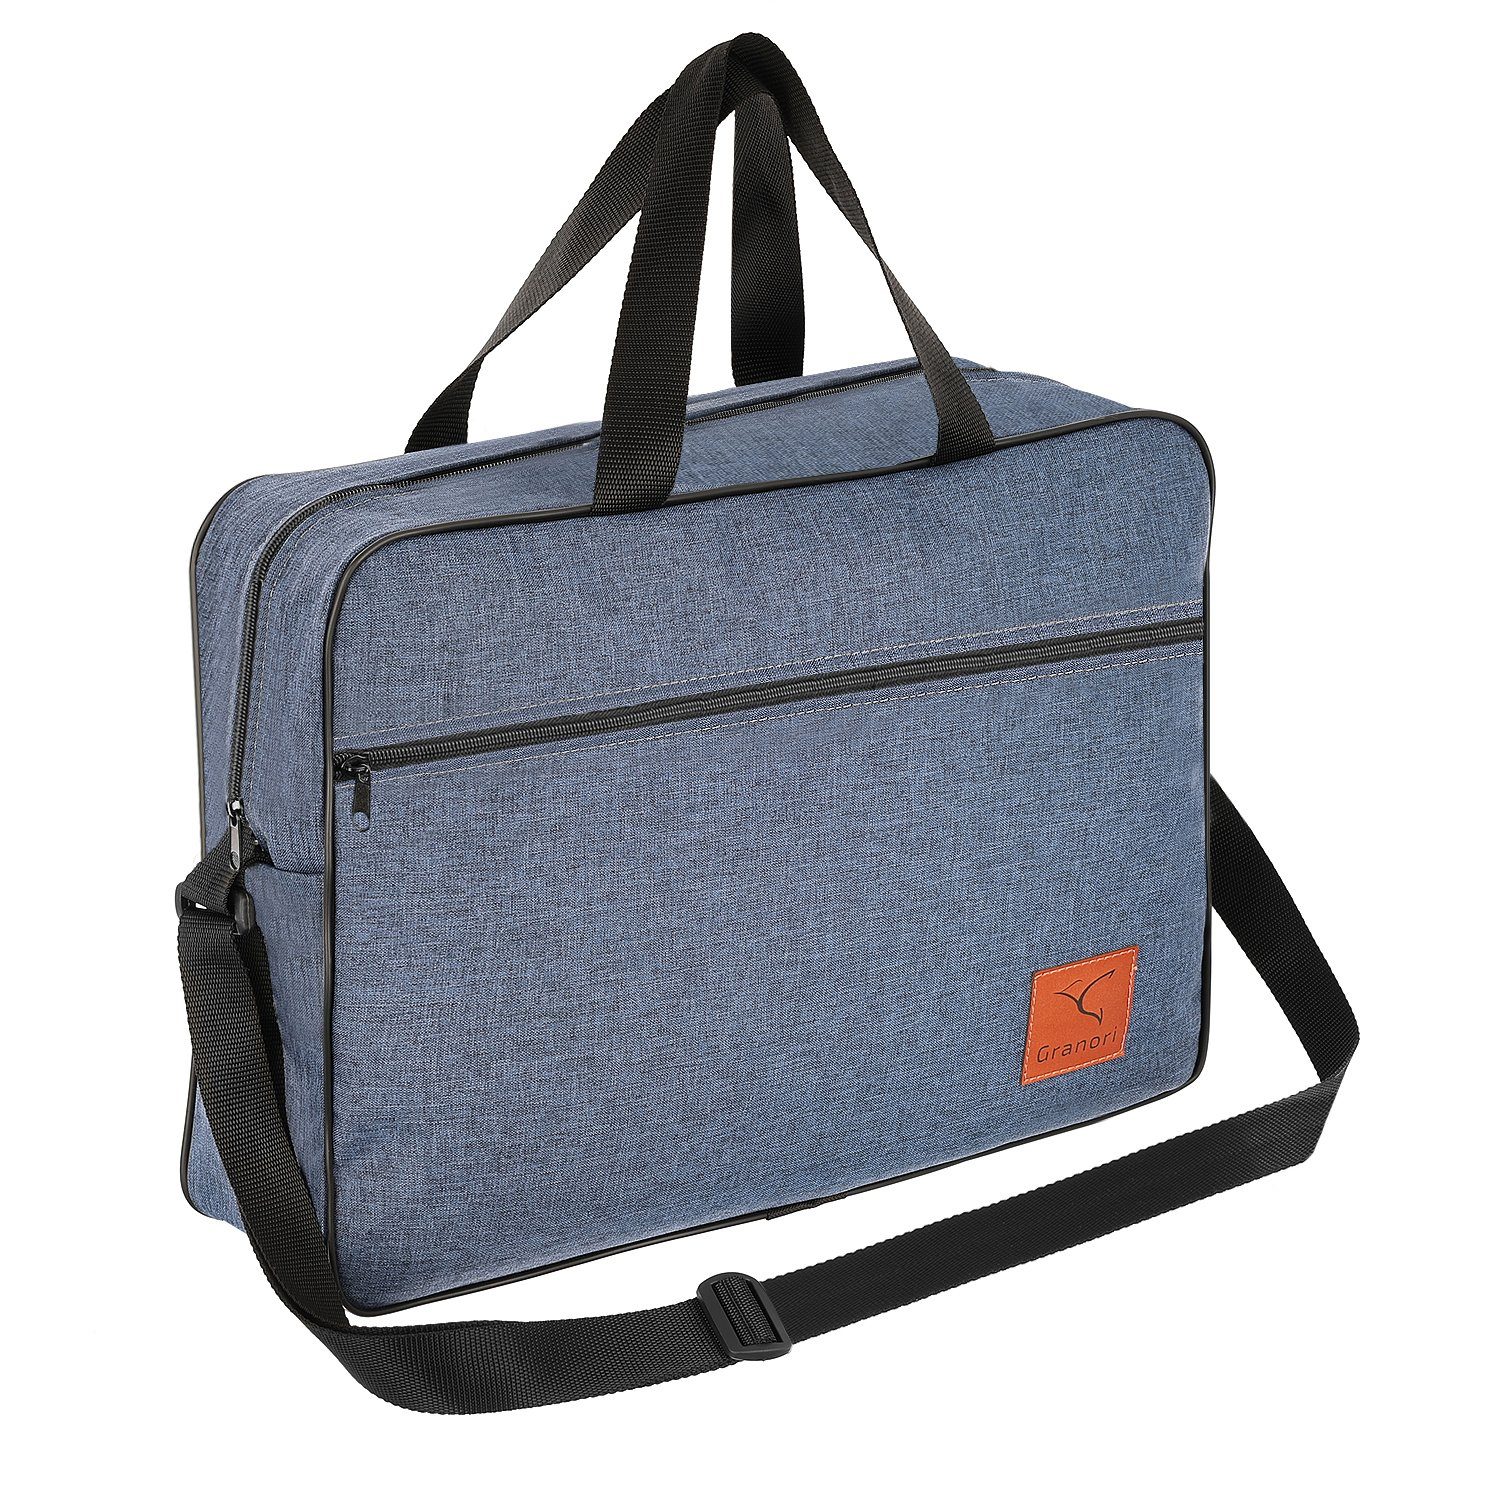 Granori Reisetasche 40x30x10 cm Handgepäck für Lufthansa Flug, extra leicht, mit verstellbarem Schultergurt Blau